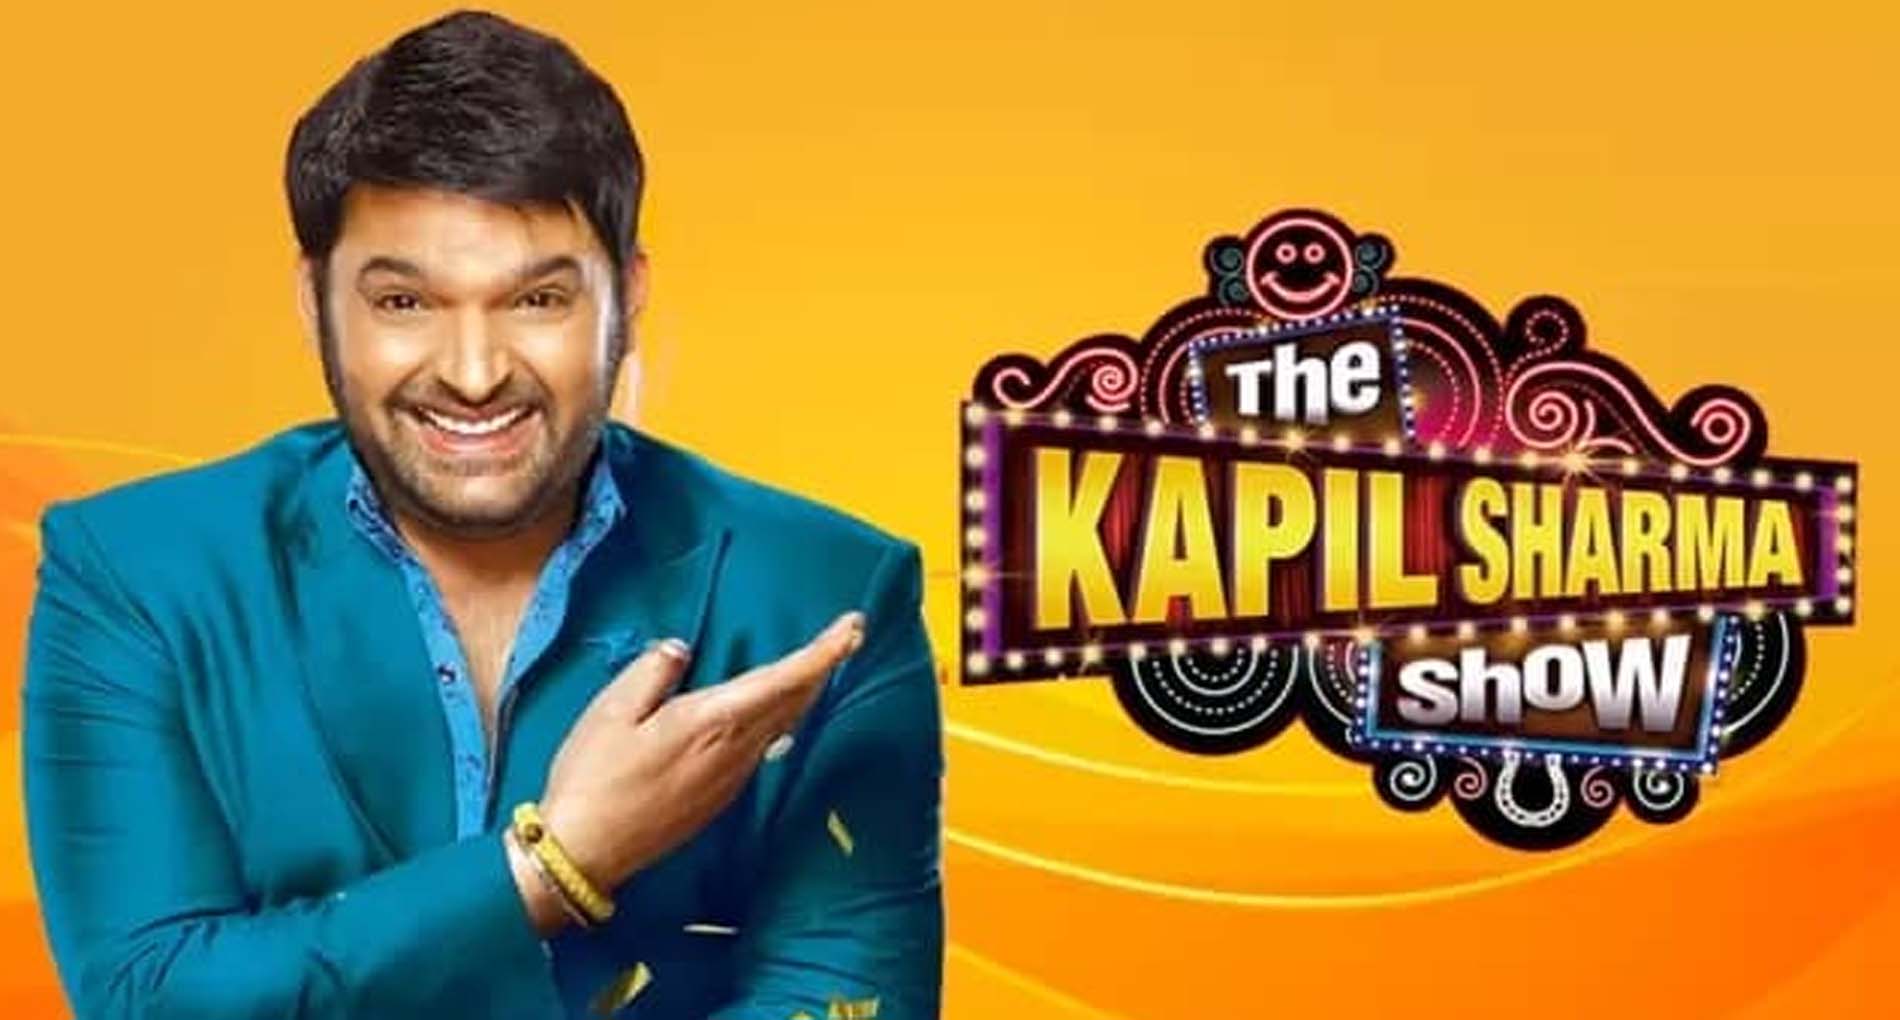 अब आप नहीं लगा पाएंगे हंसी के ठहाके! बंद हो रहा है ‘The Kapil Sharma Show’!